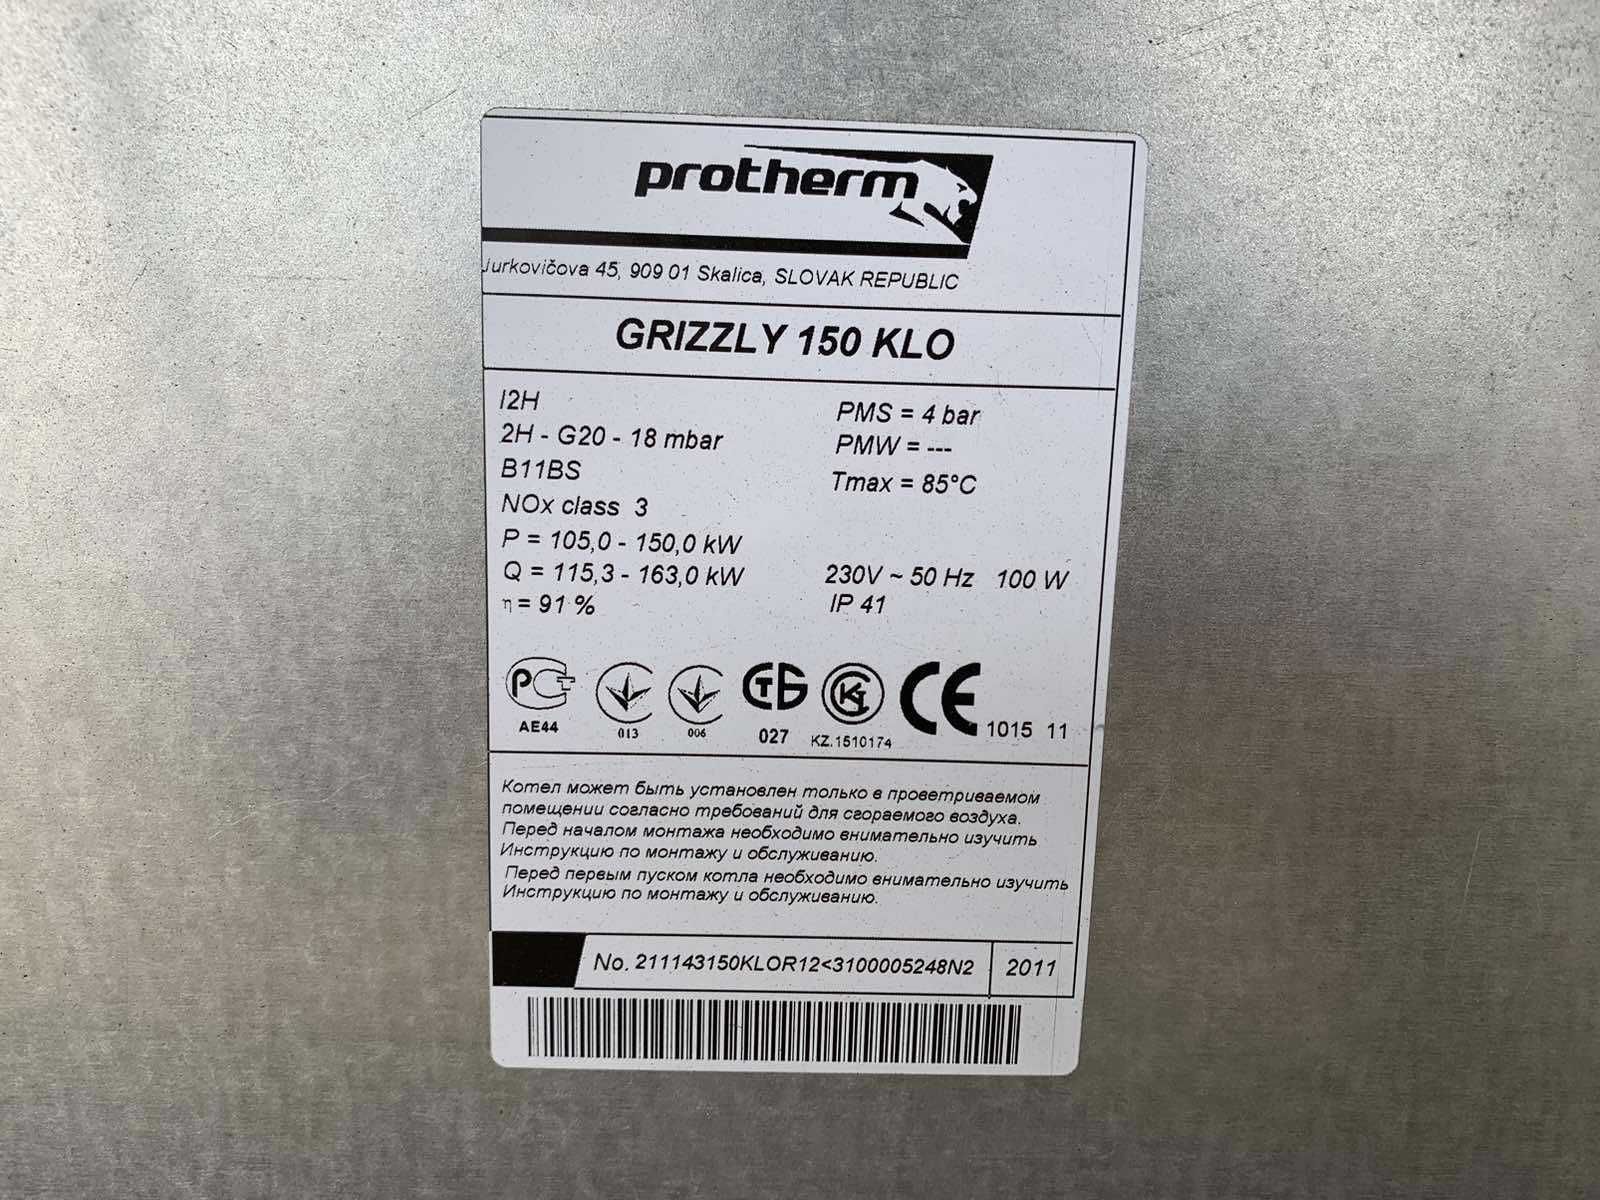 Котёл Protherm (Протерм) 150 KLO (Гризли) с электророзжигом (150KLOR12